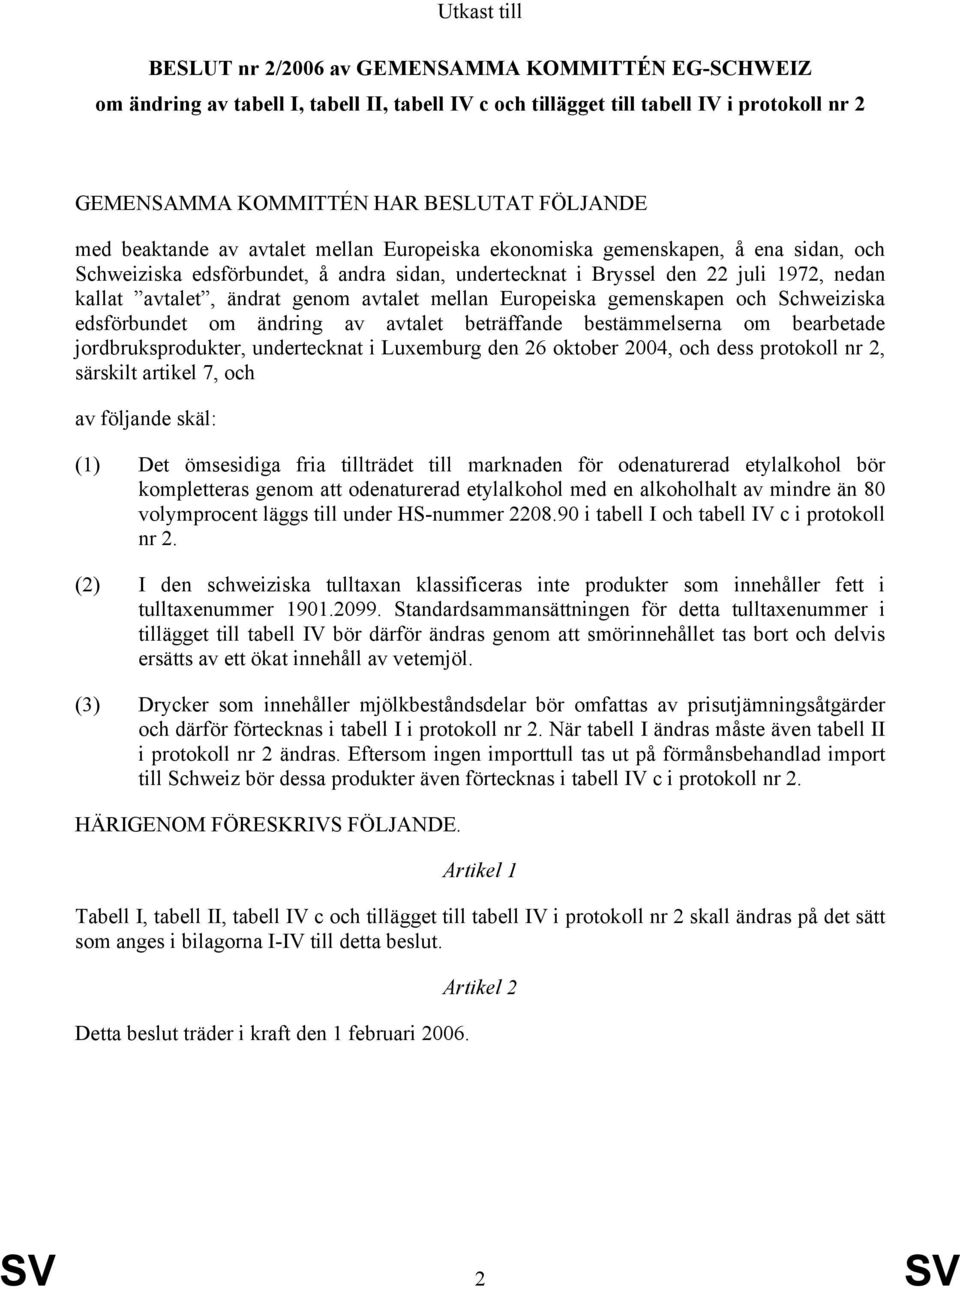 genom avtalet mellan Europeiska gemenskapen och Schweiziska edsförbundet om ändring av avtalet beträffande bestämmelserna om bearbetade jordbruksprodukter, undertecknat i Luxemburg den 26 oktober